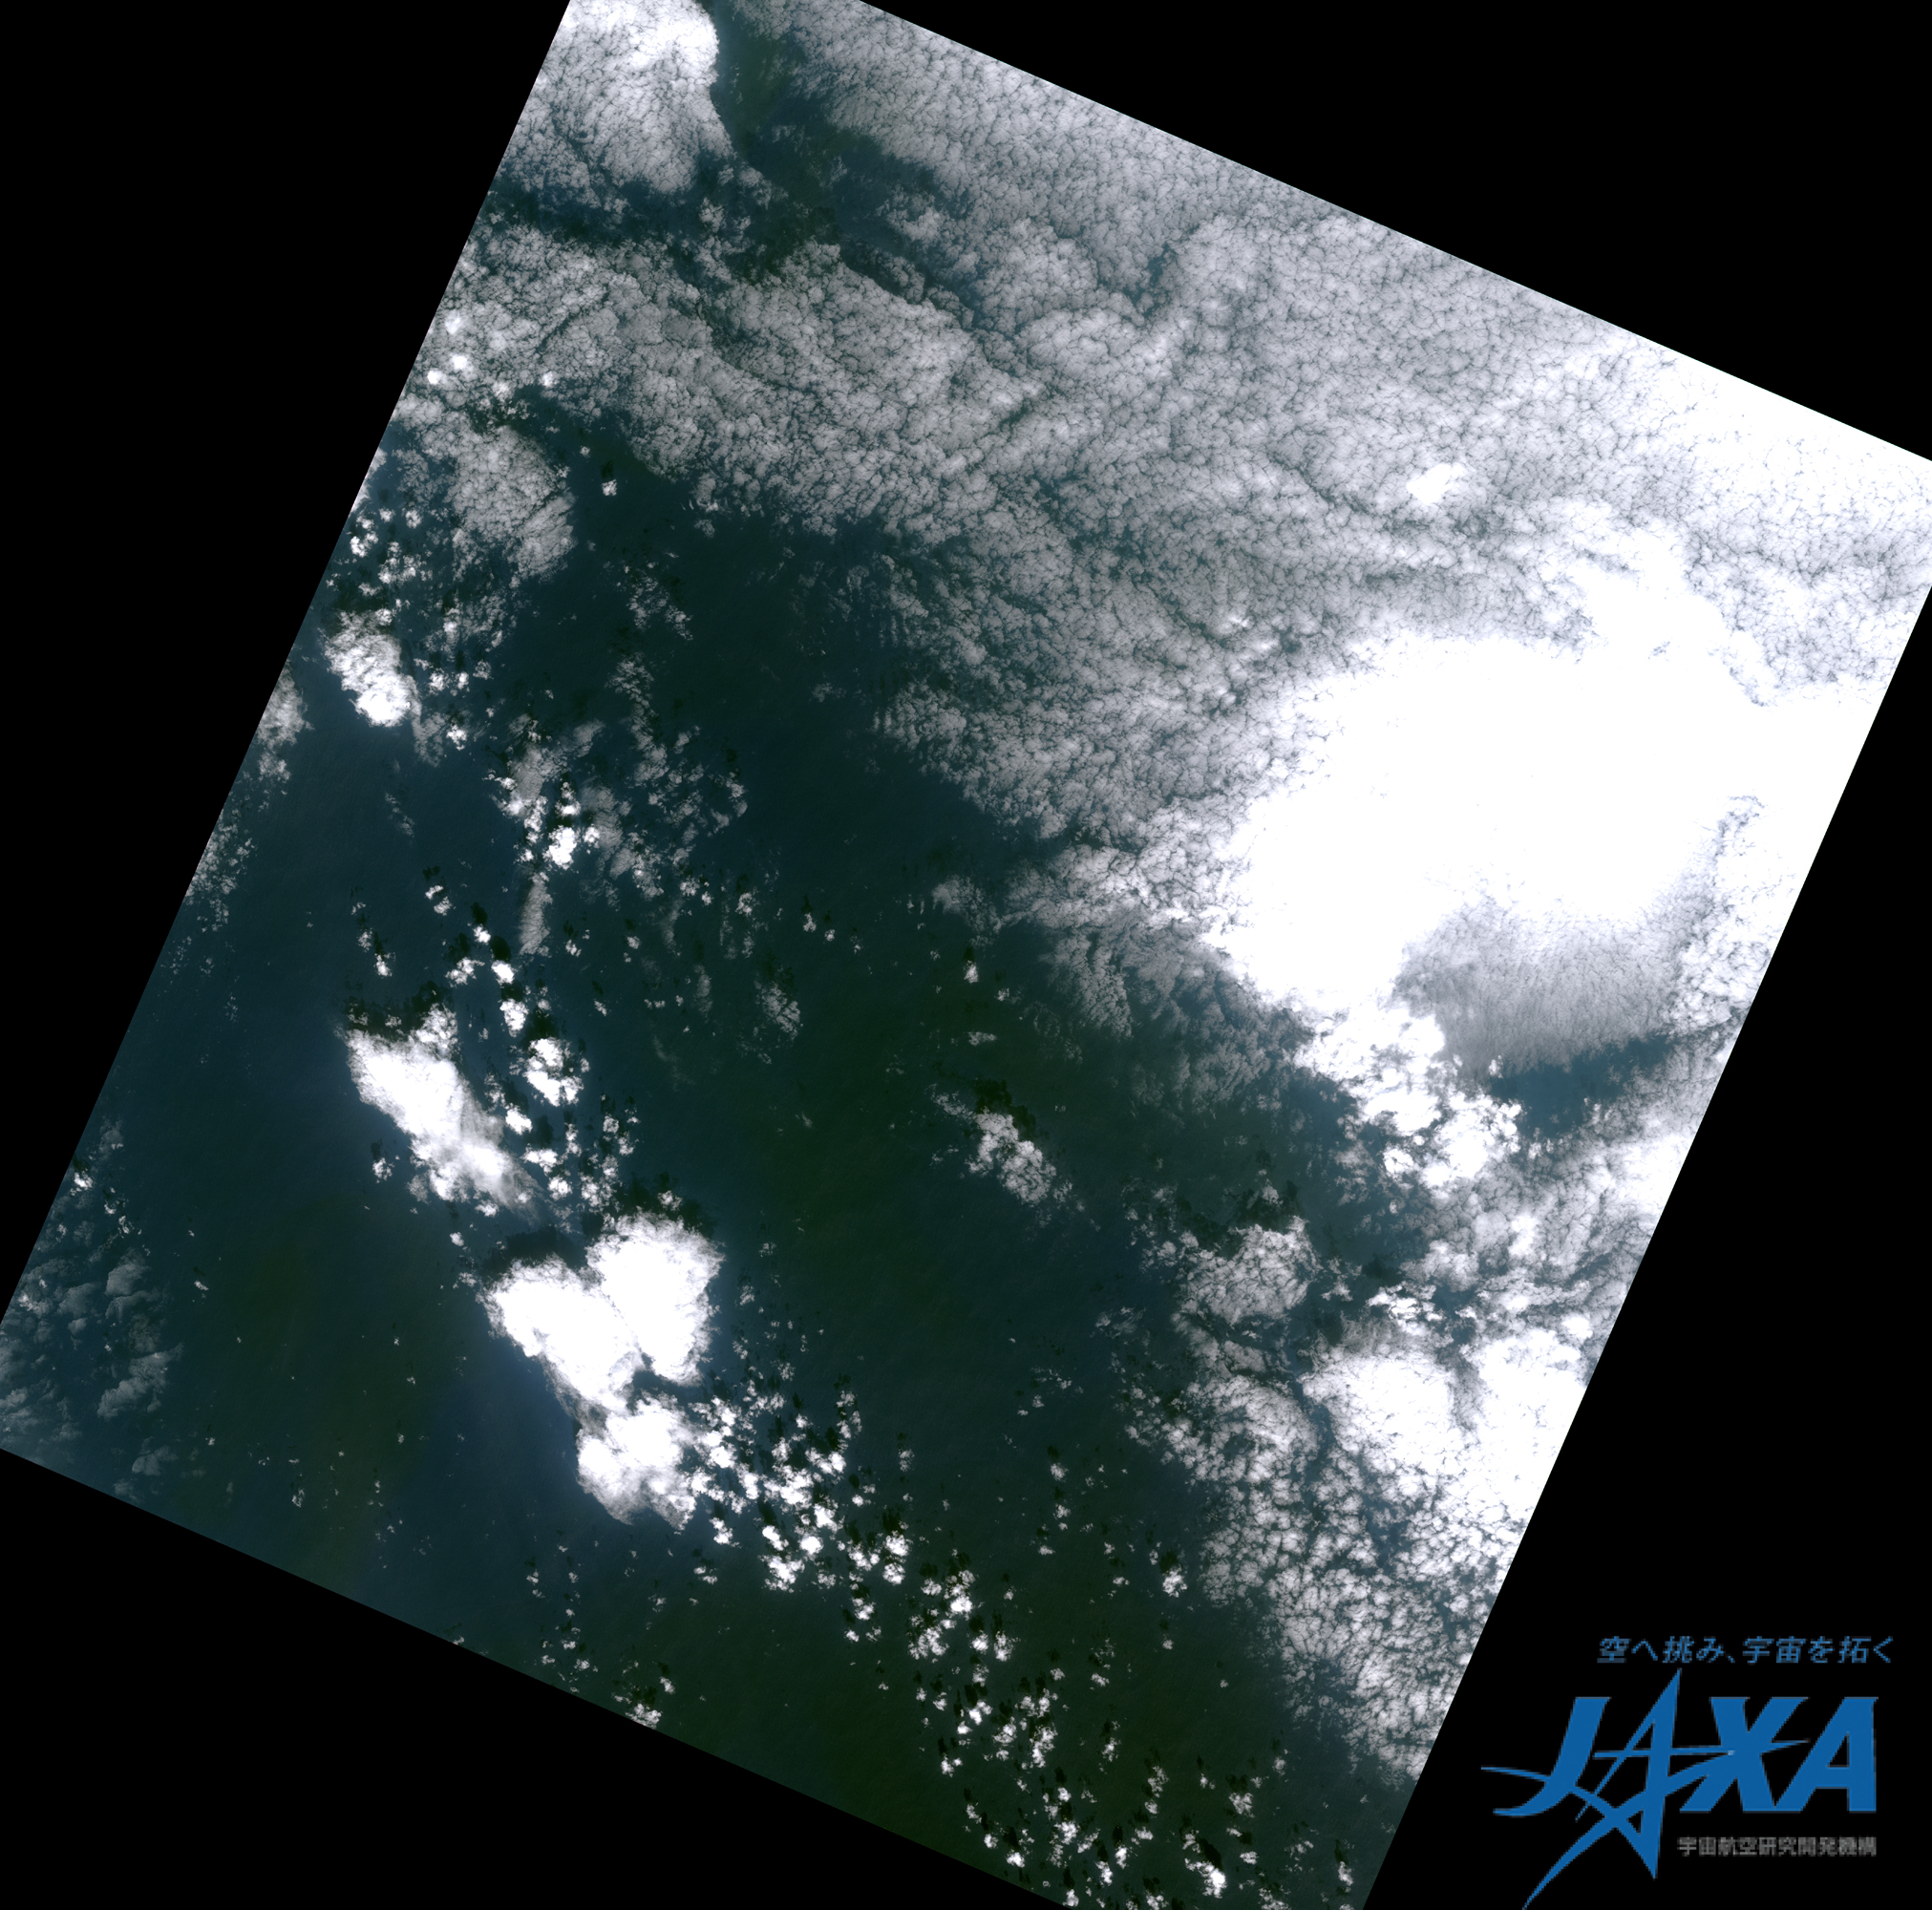 図2:陸域観測技術衛星「だいち」搭載センサ、高性能可視近赤外放射計2型(アブニール・ツー)の最終画像(アラスカ南東部海上、取得日時：2011年4月22日5時21分頃(日本時間))